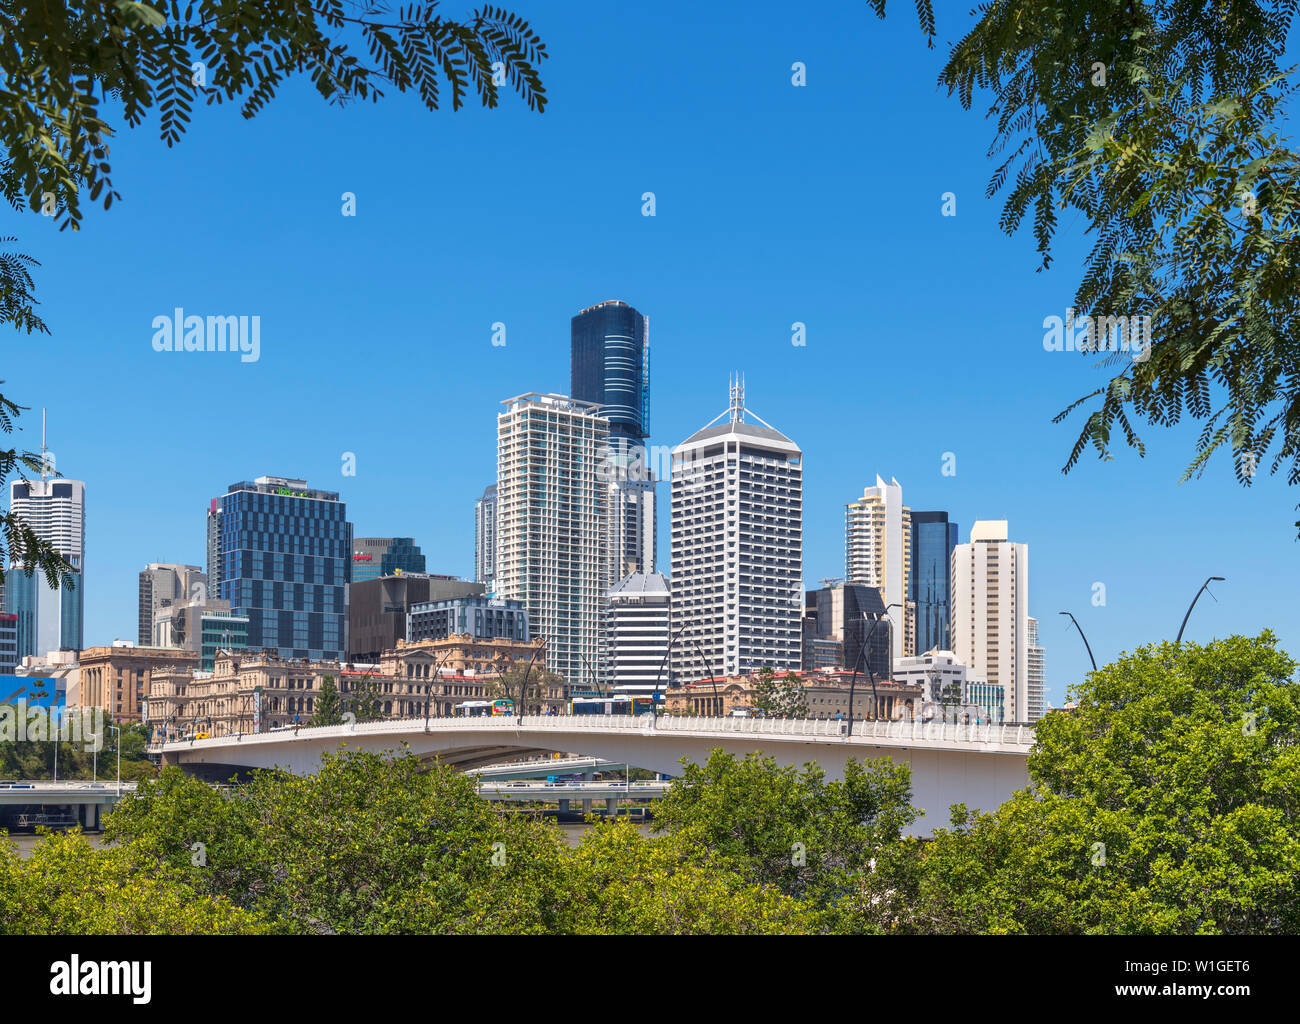 L'horizon de la Central Business District (CBD) et le pont Victoria à partir de la Qeii Park, Brisbane, Queensland, Australie Banque D'Images